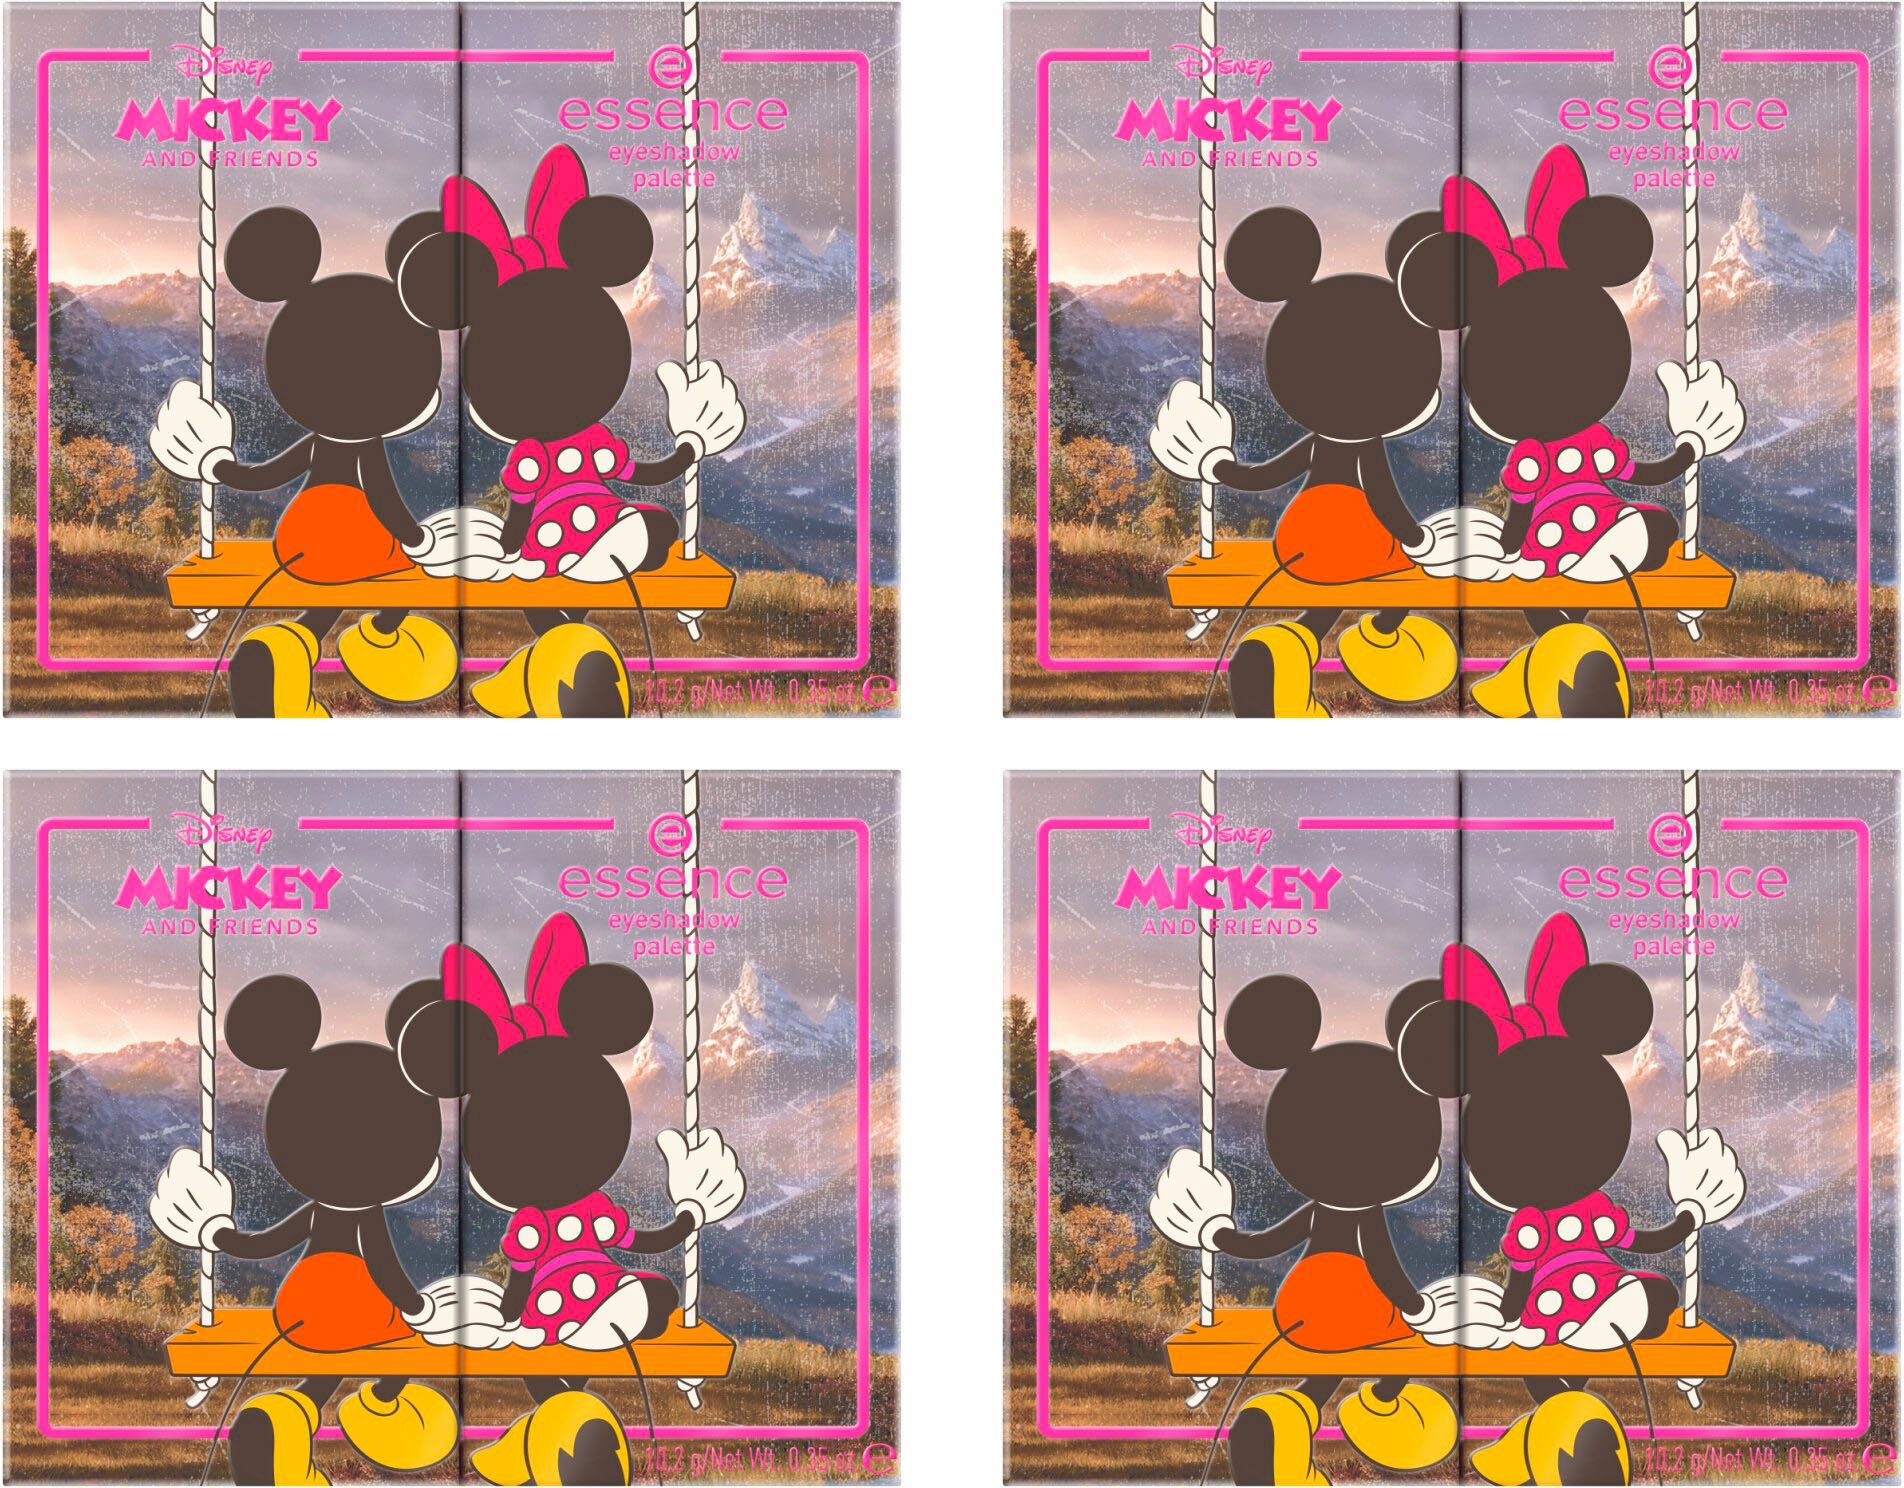 für Looks and Disney Lidschatten-Palette abwechslungsreiche Mickey eyeshadow Essence Augen-Make-Up palette, Friends